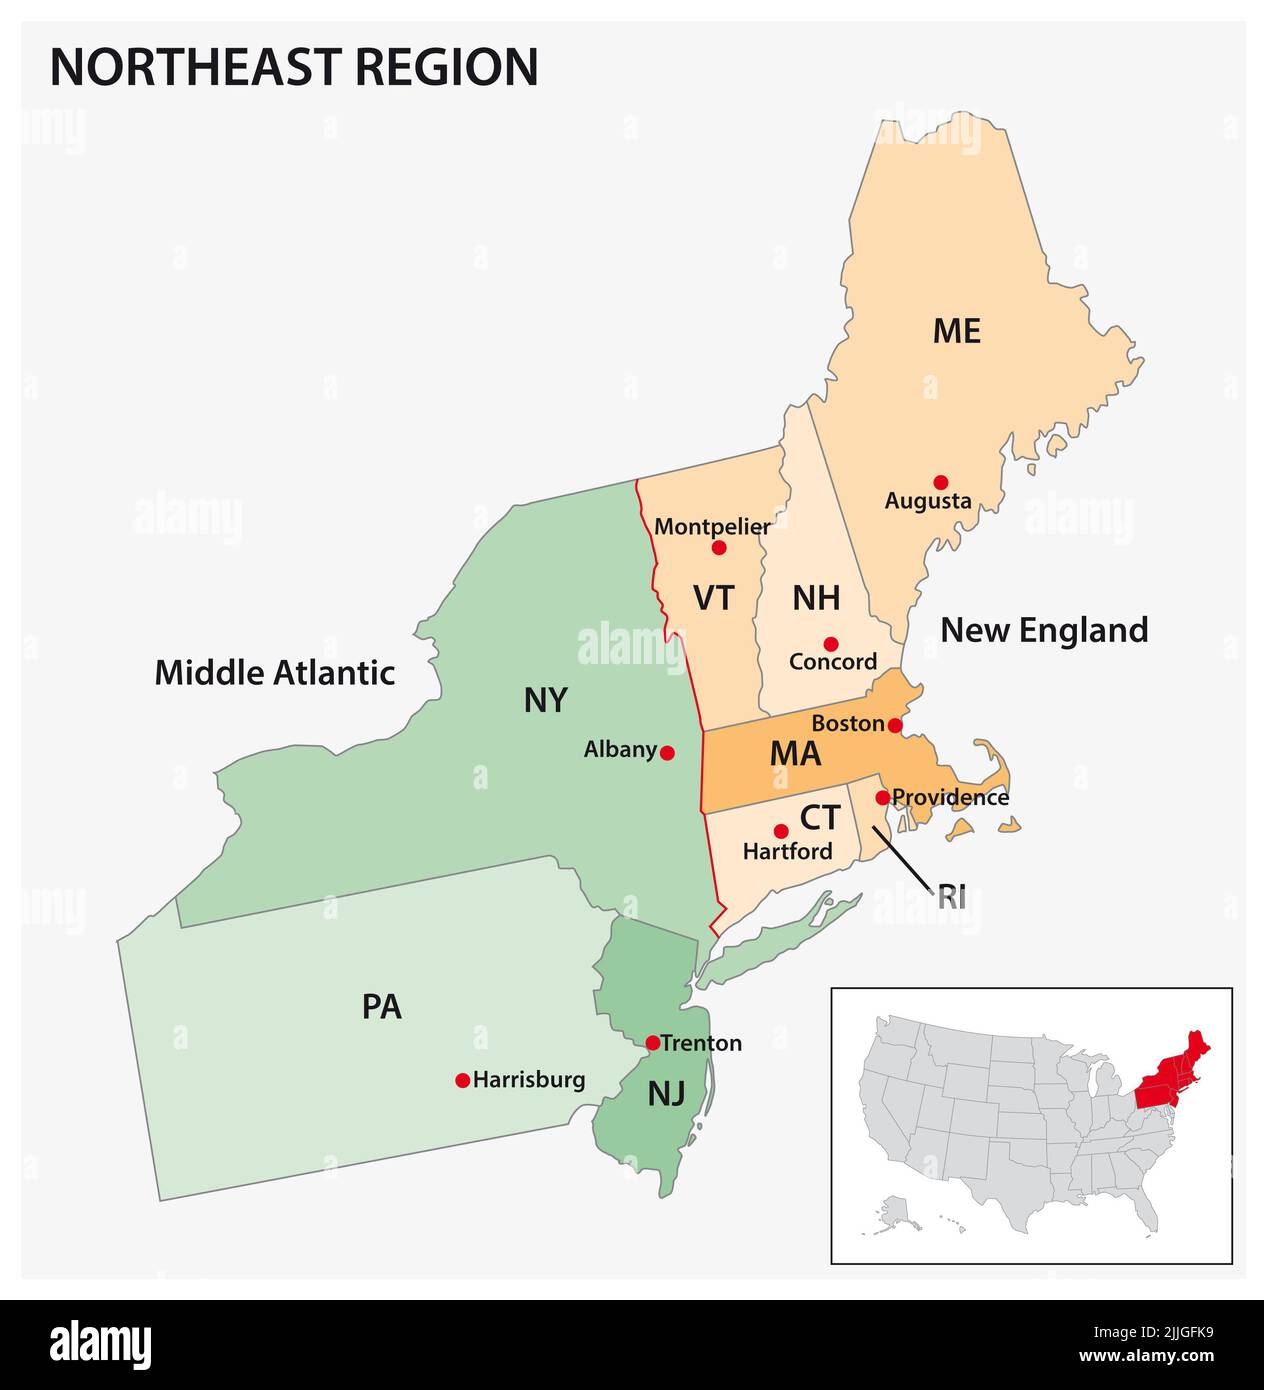 Mappa vettoriale amministrativa della regione del censimento degli Stati Uniti a nord-est Foto Stock